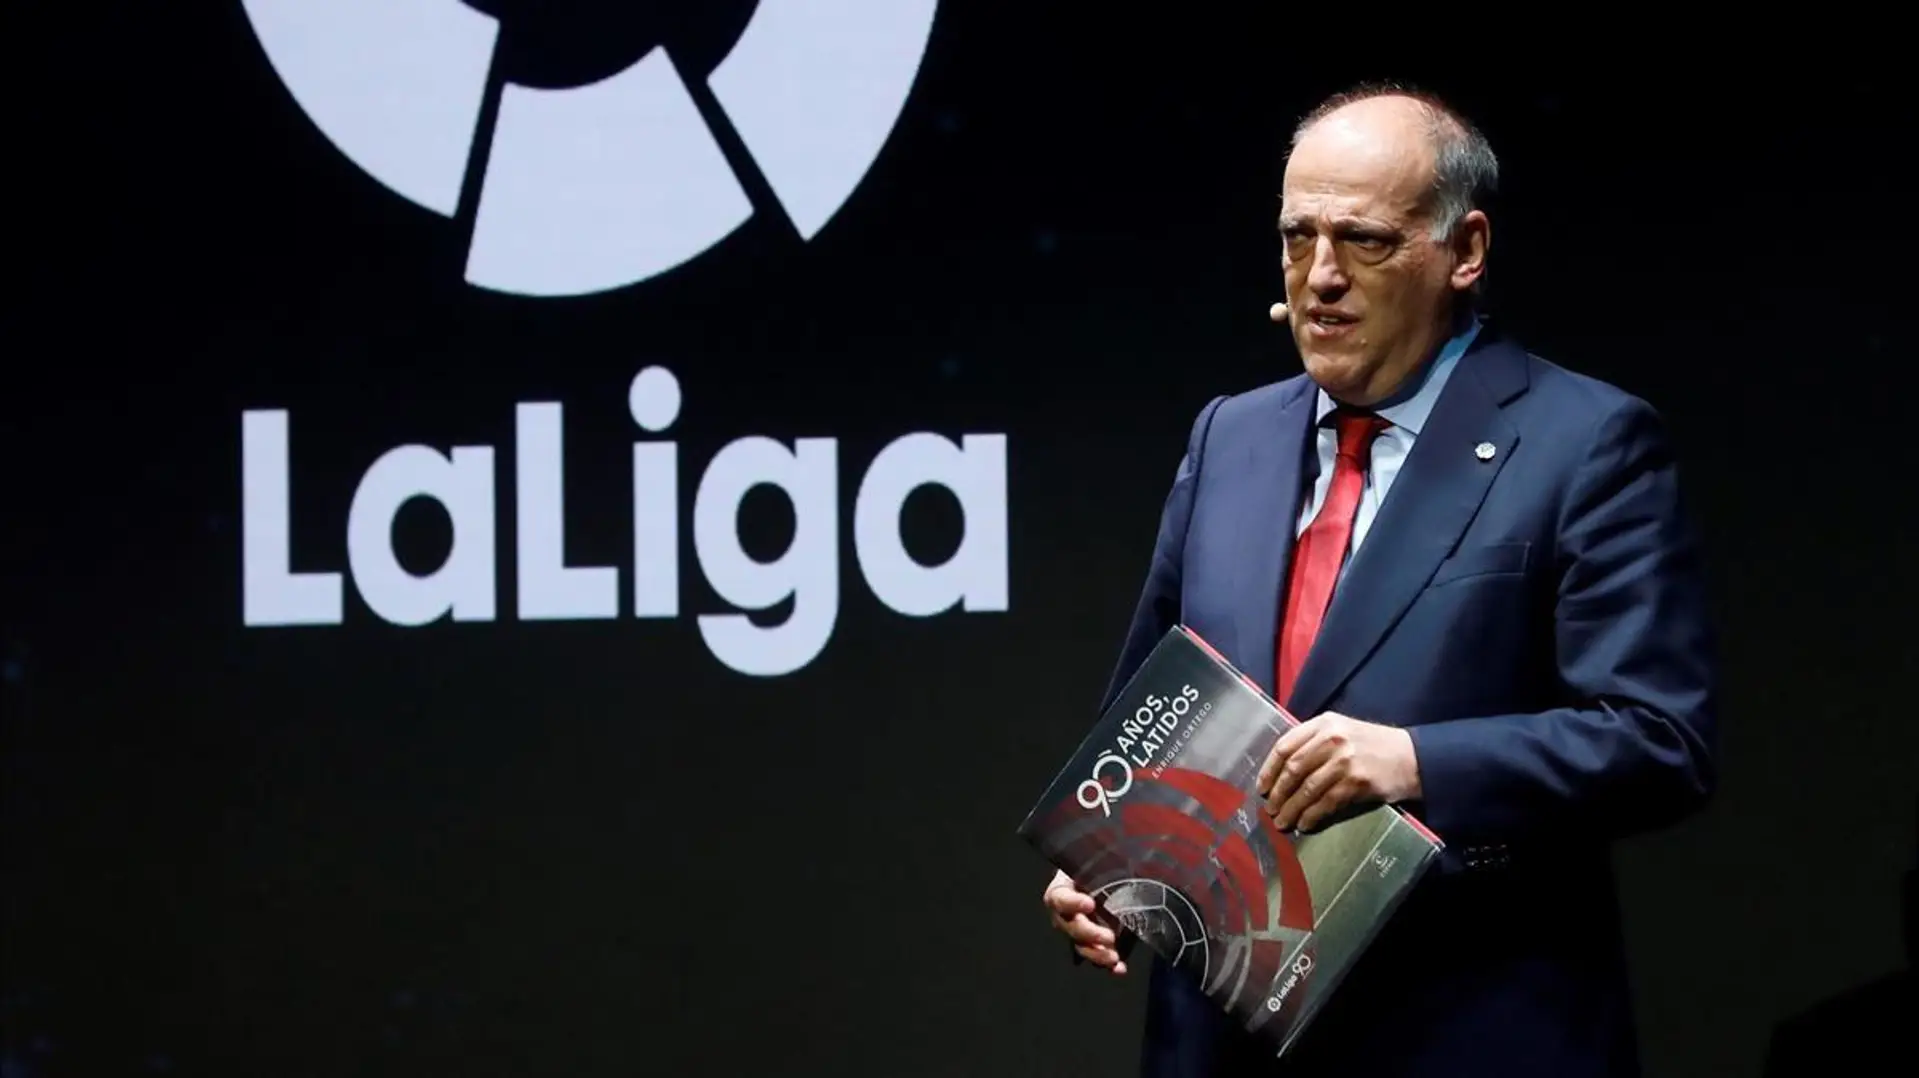 Tebas, président de la Liga,  souhaite reprendre la Liga le 12 juin malgré cinq tests positifs